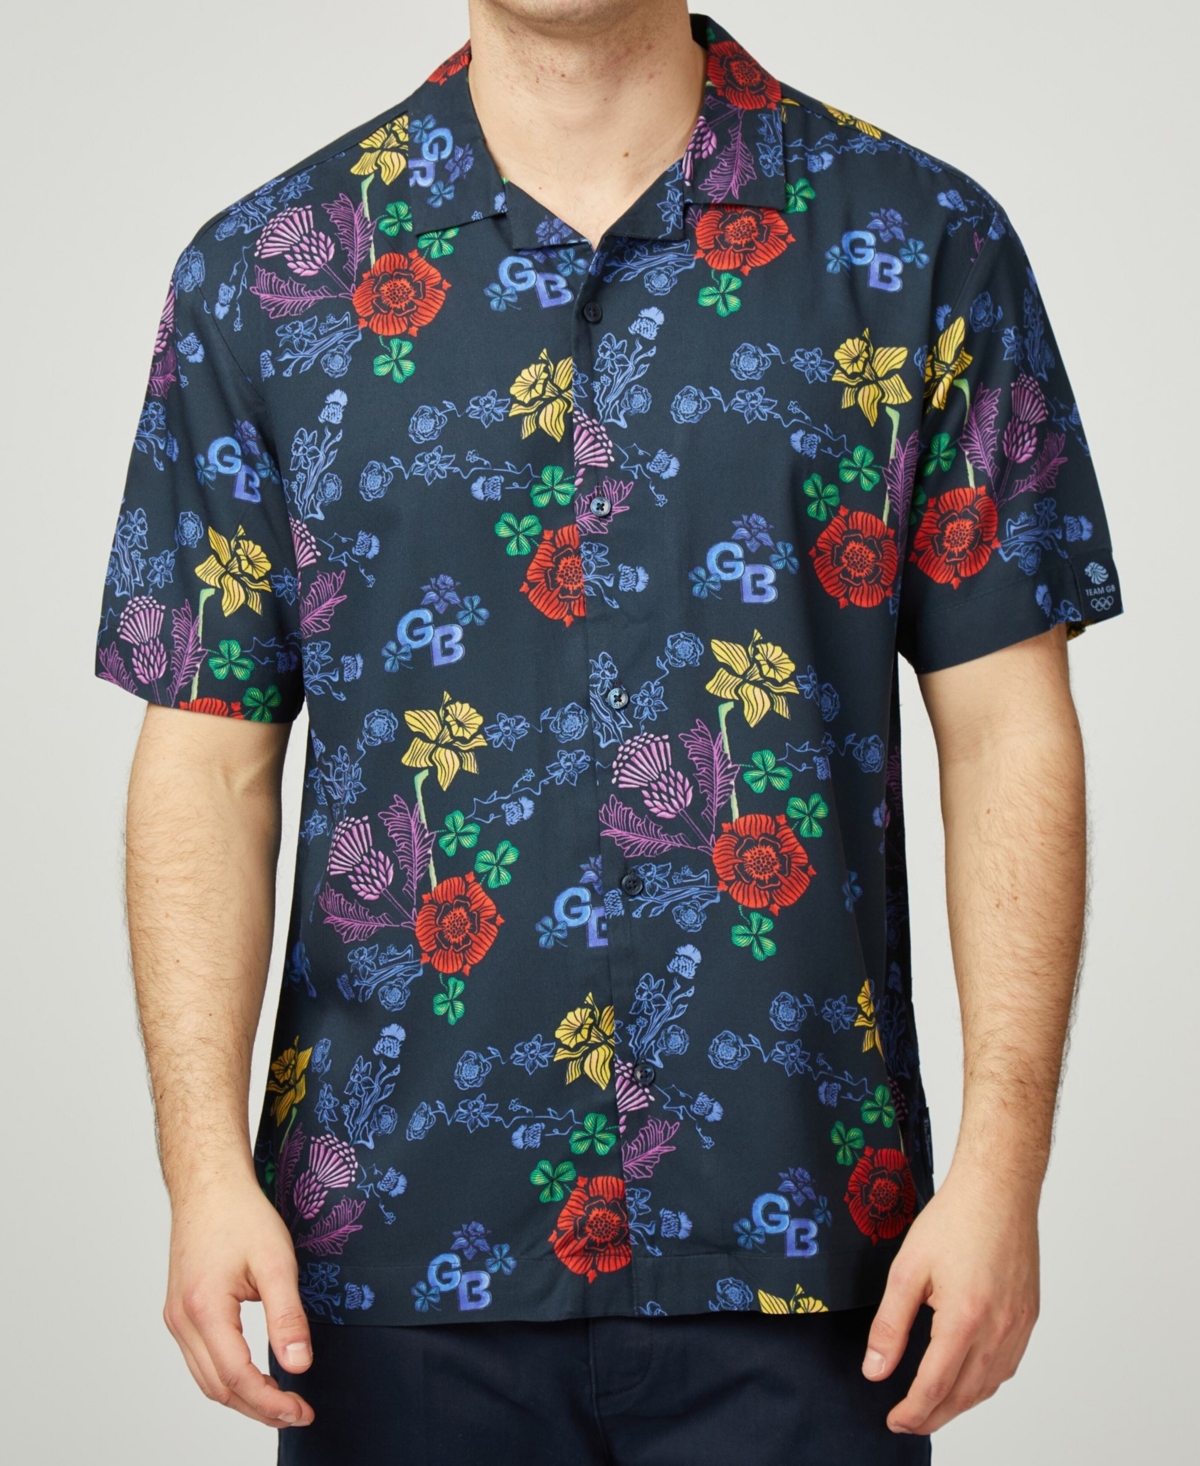 Men's Team Gb Floral Shirt - Dark Navy